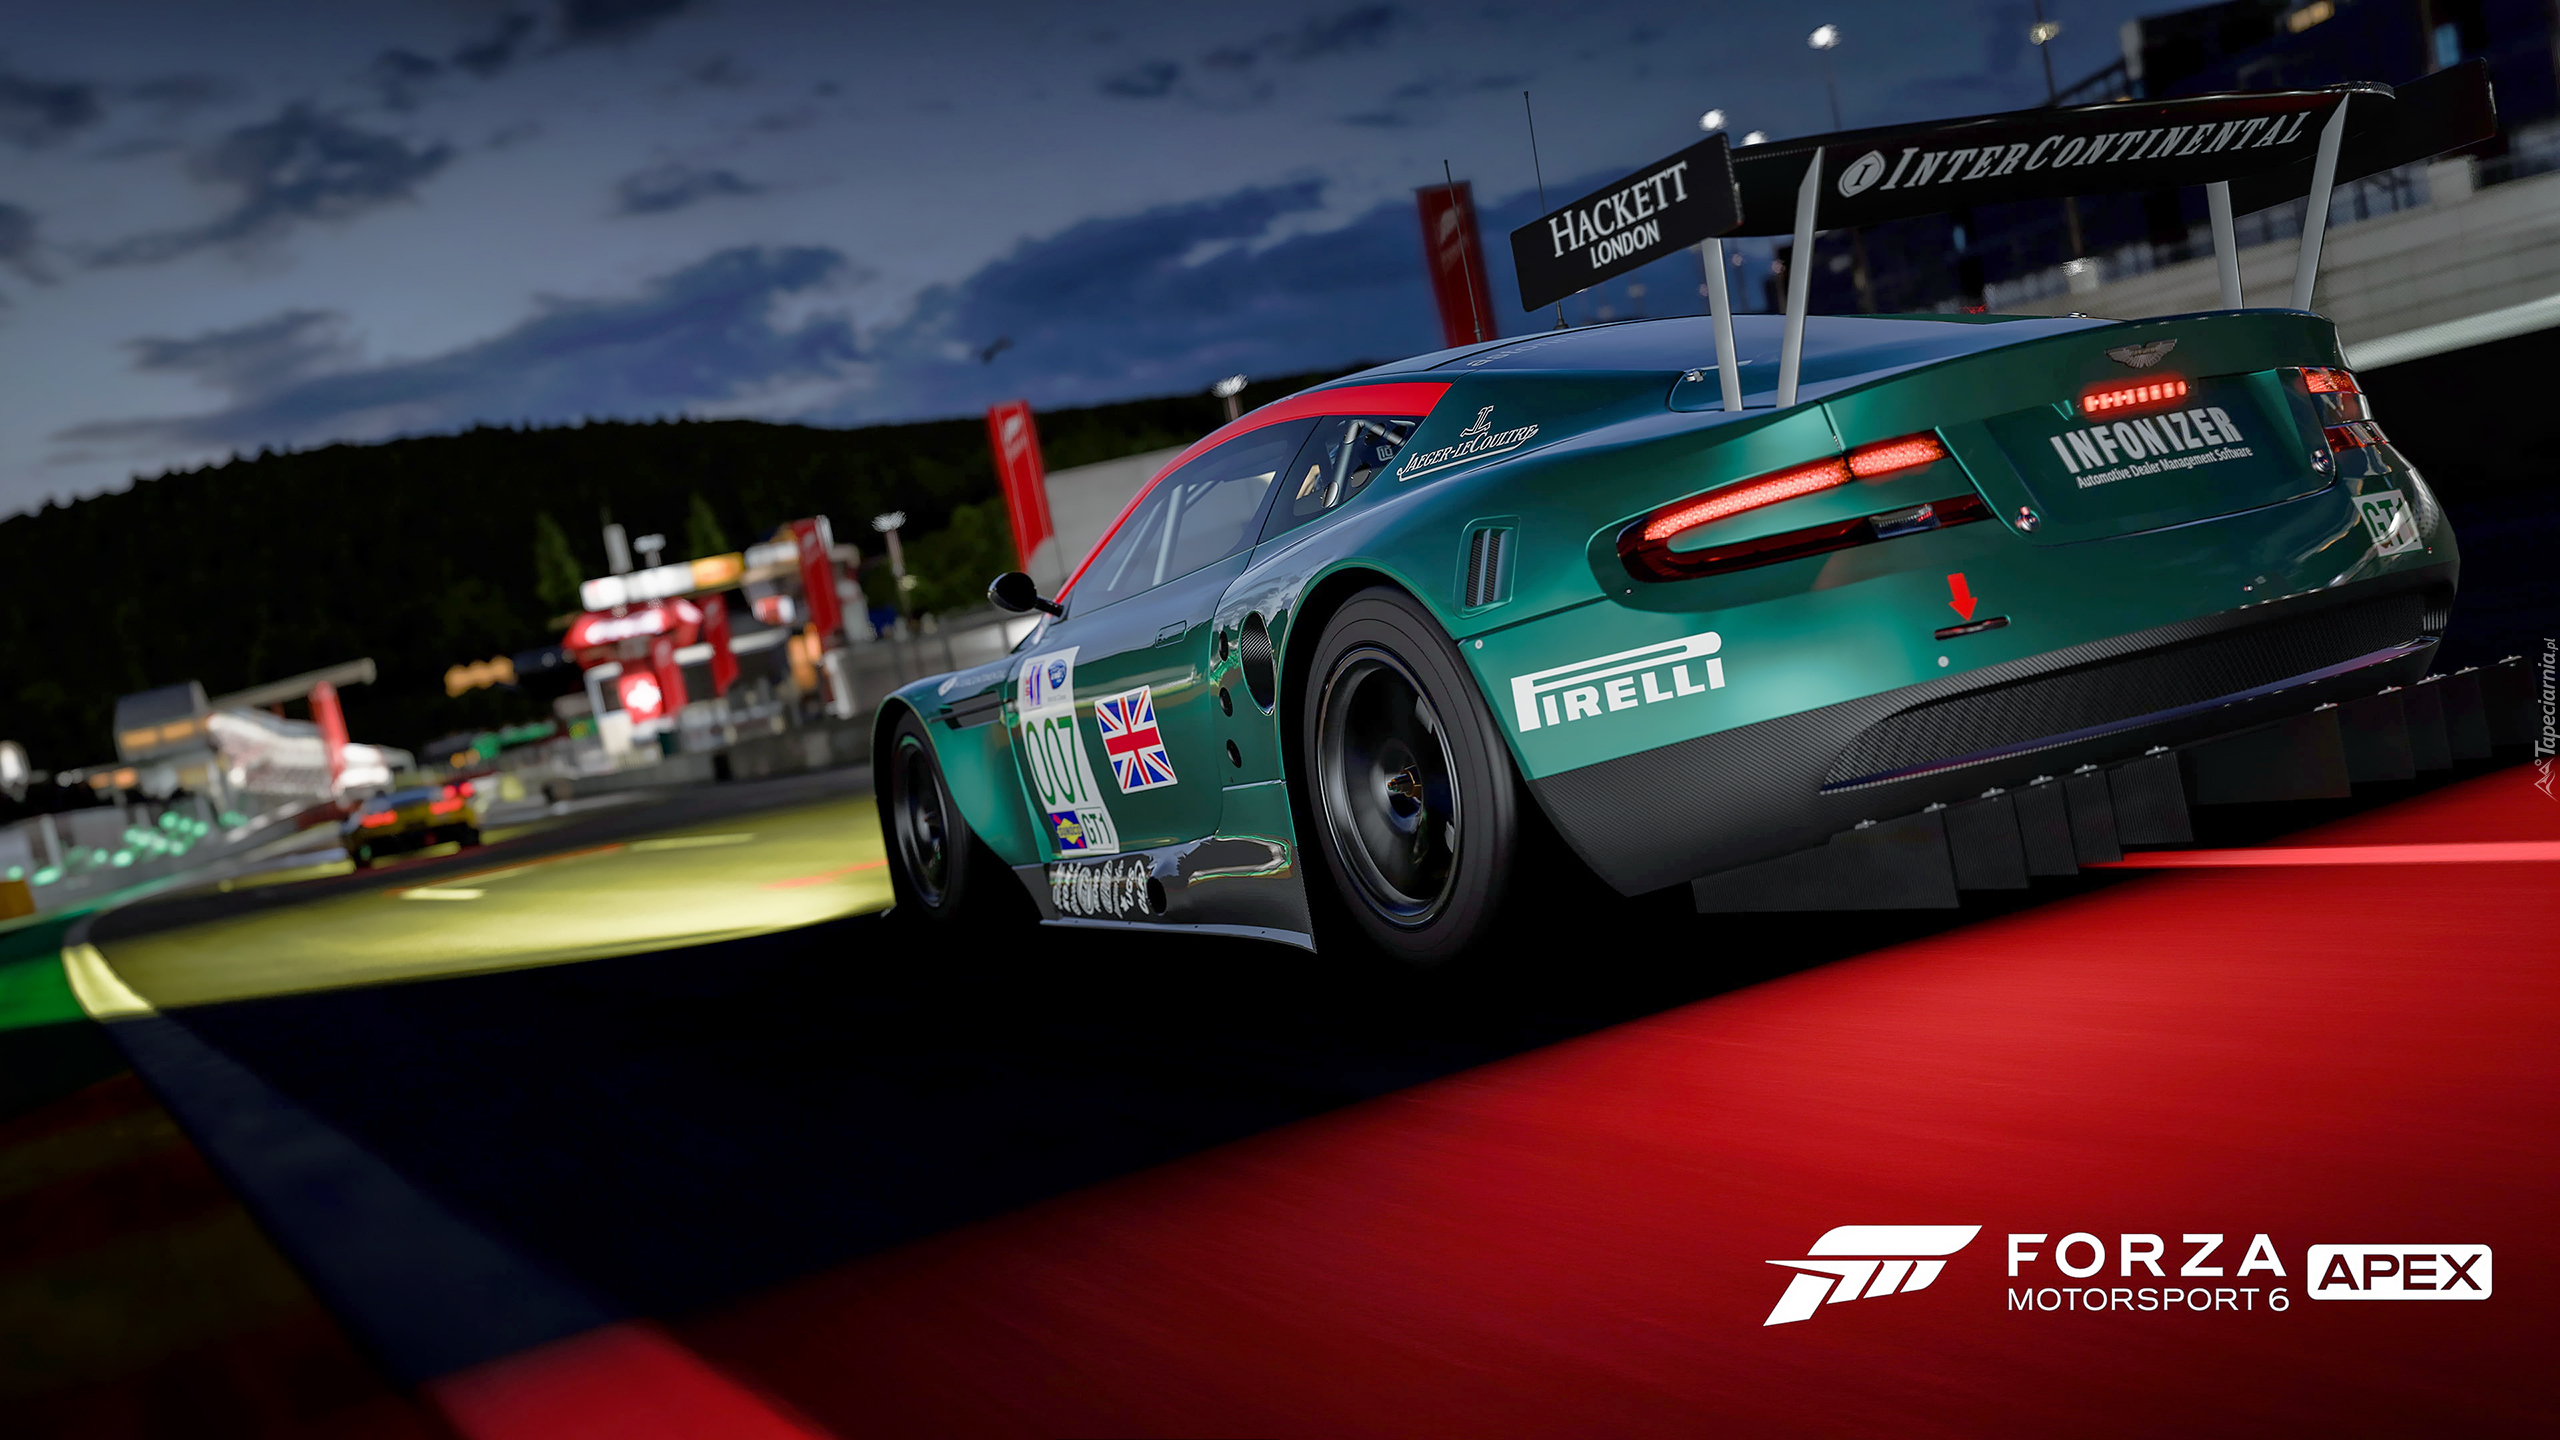 Gra, Forza Motorsport 6 APEX, Aston Martin, Zielony, Tył, Wyścig, Noc